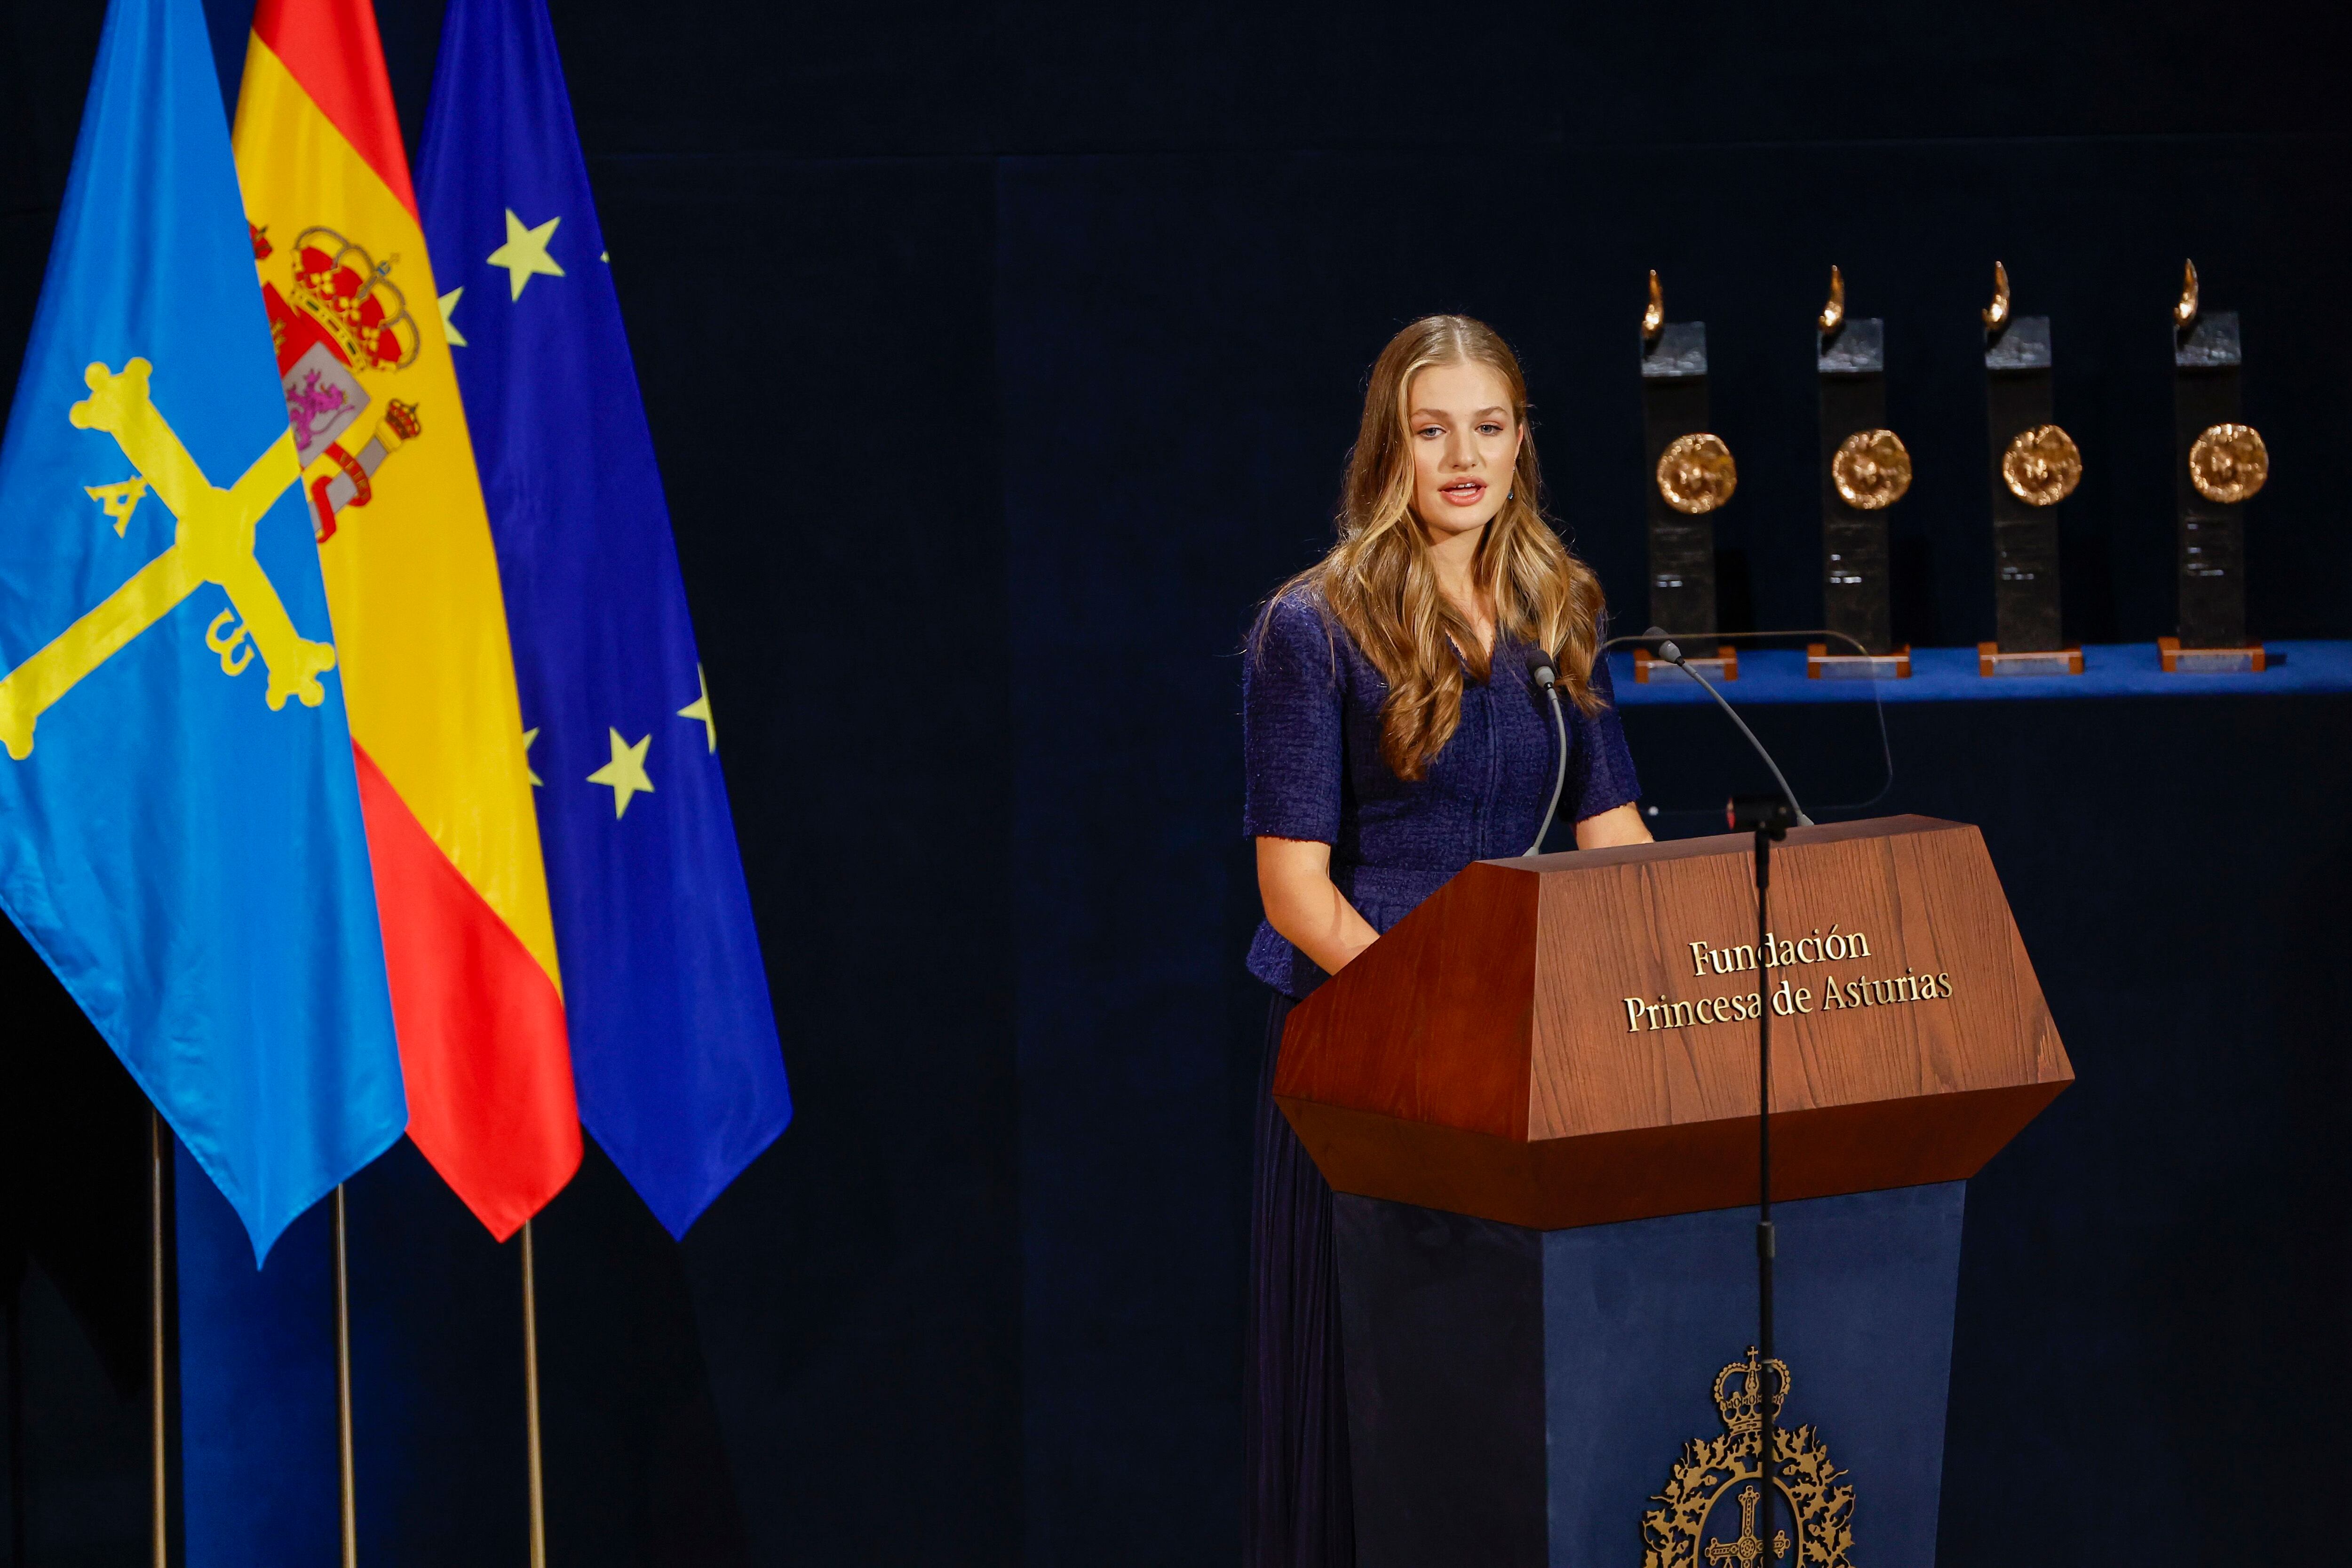 La princesa de Asturias interviene durante la 43º edición de los Premios Princesa de Asturias, este viernes en el Teatro Campoamor de Oviedo.